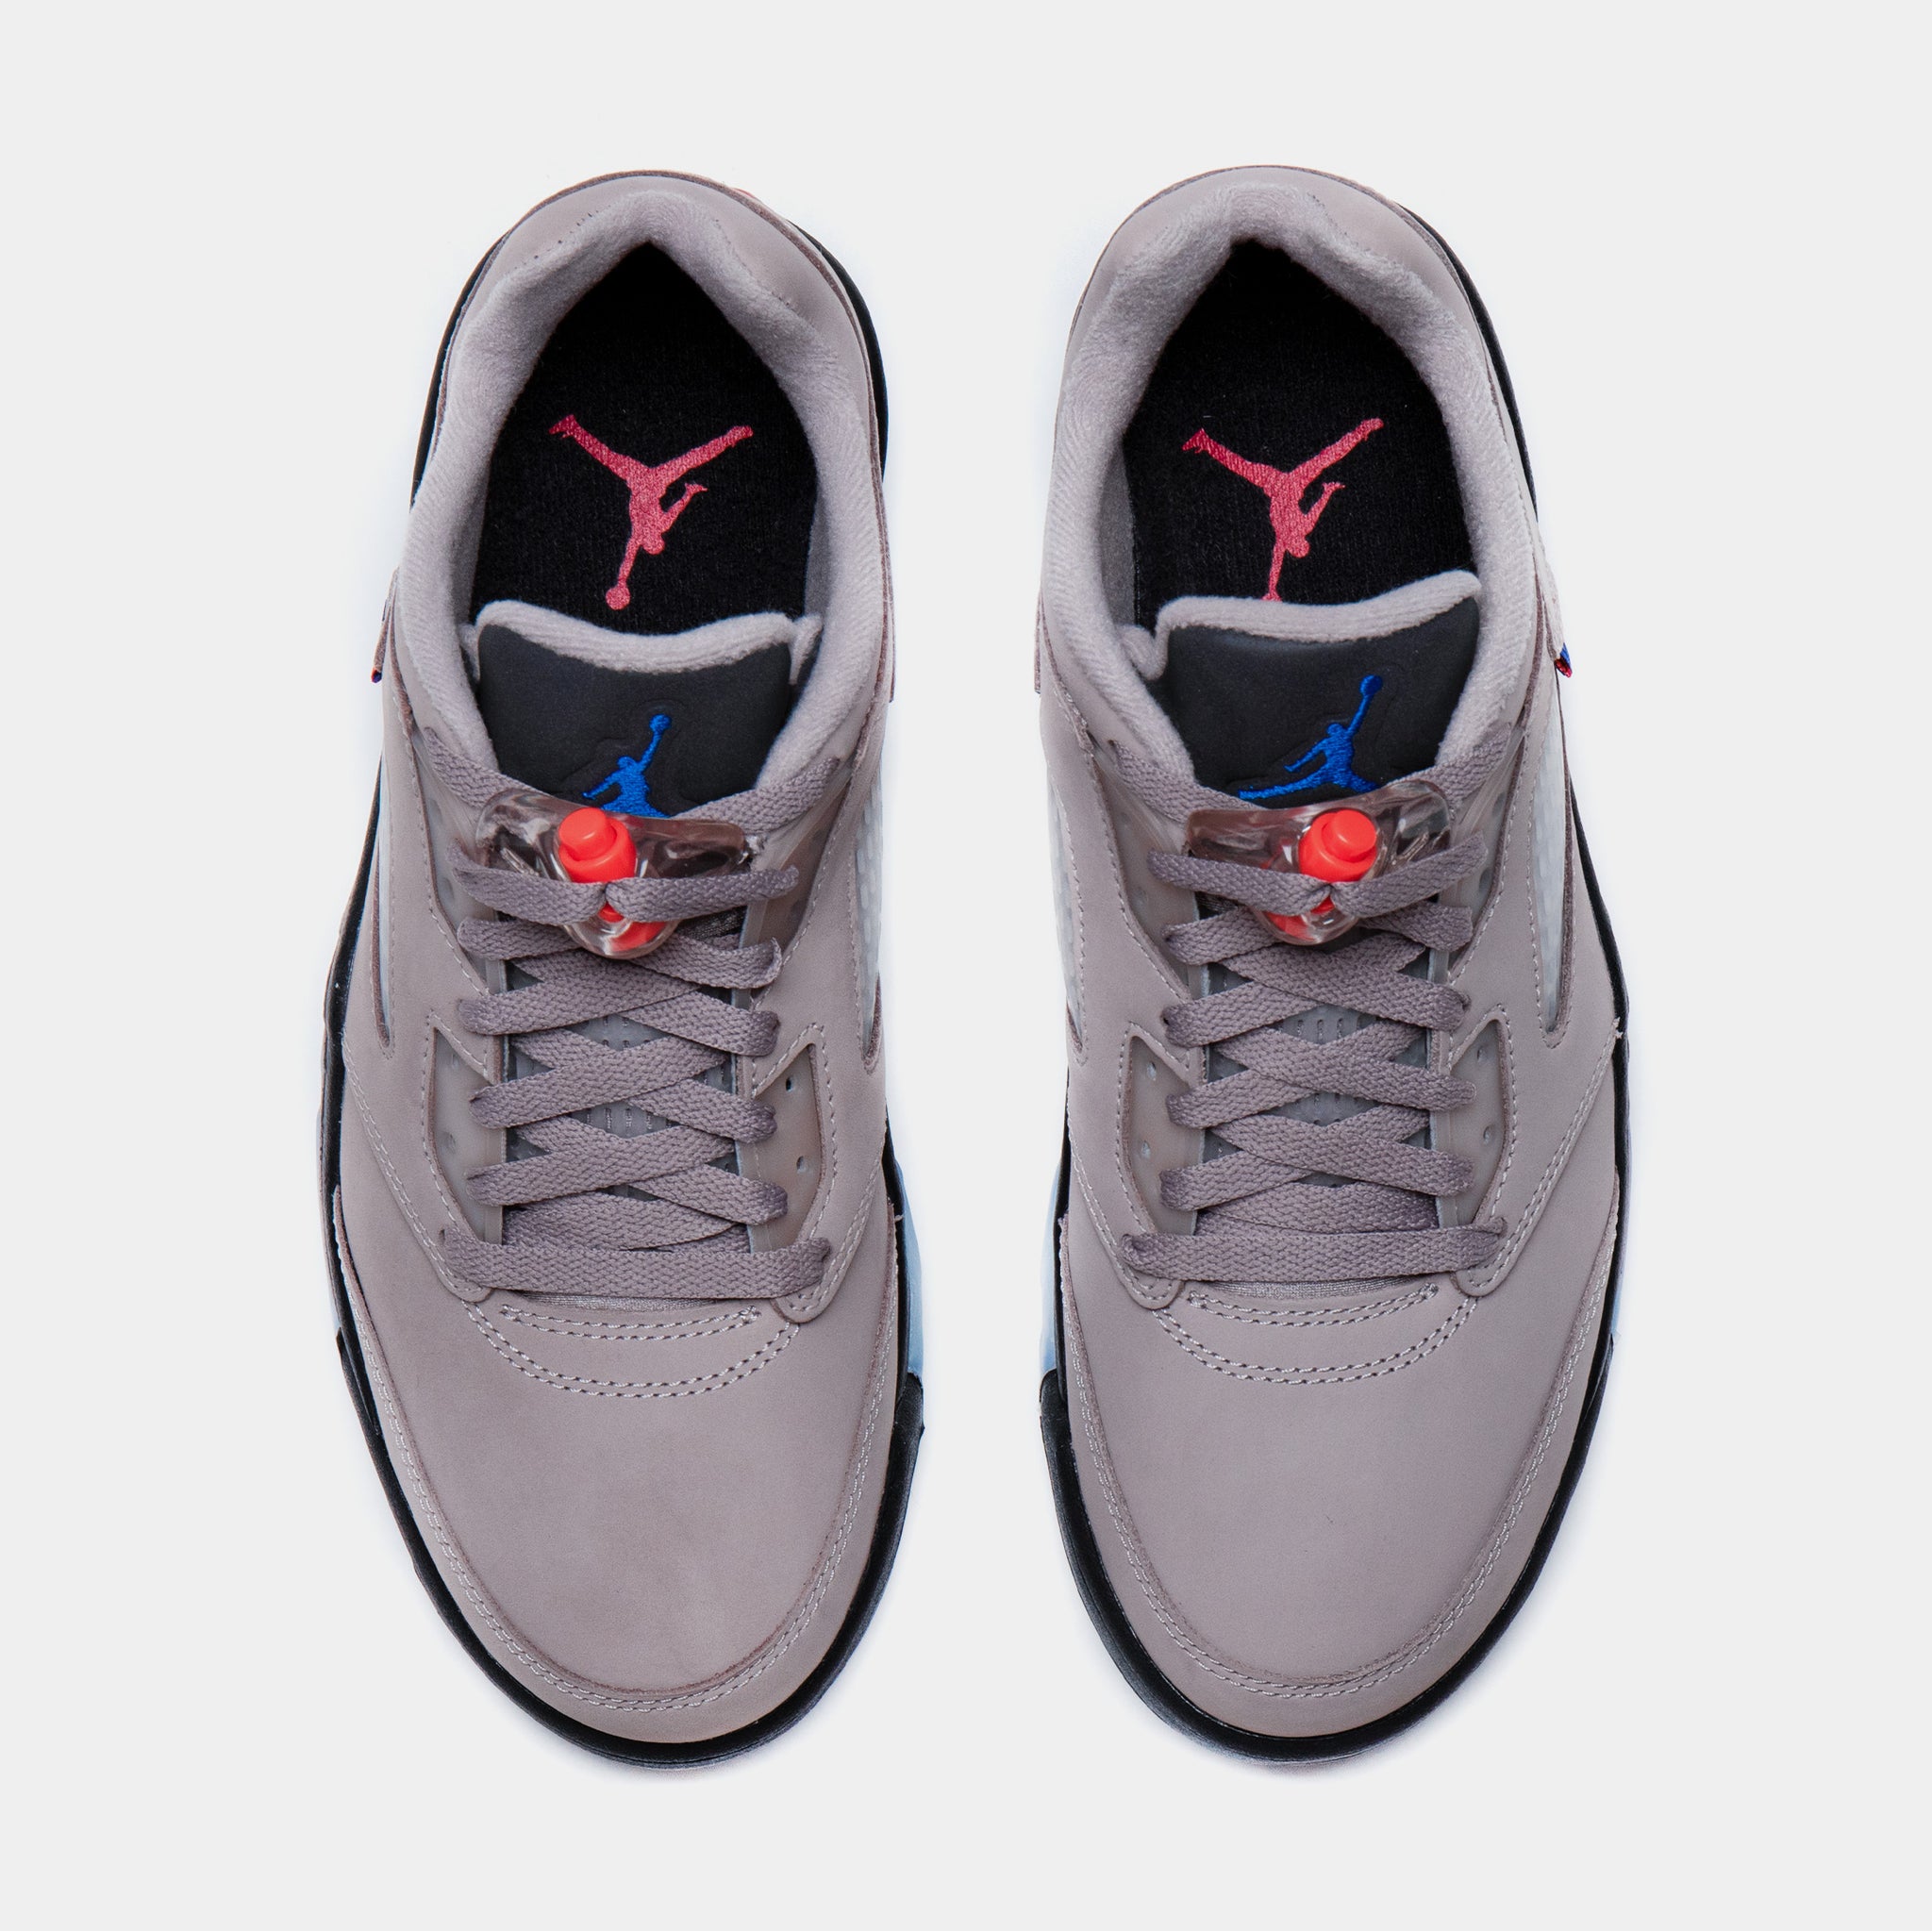 Jordan Air Jordan 5 Low x PSG Mens Lifestyle Shoes Grey Black Free